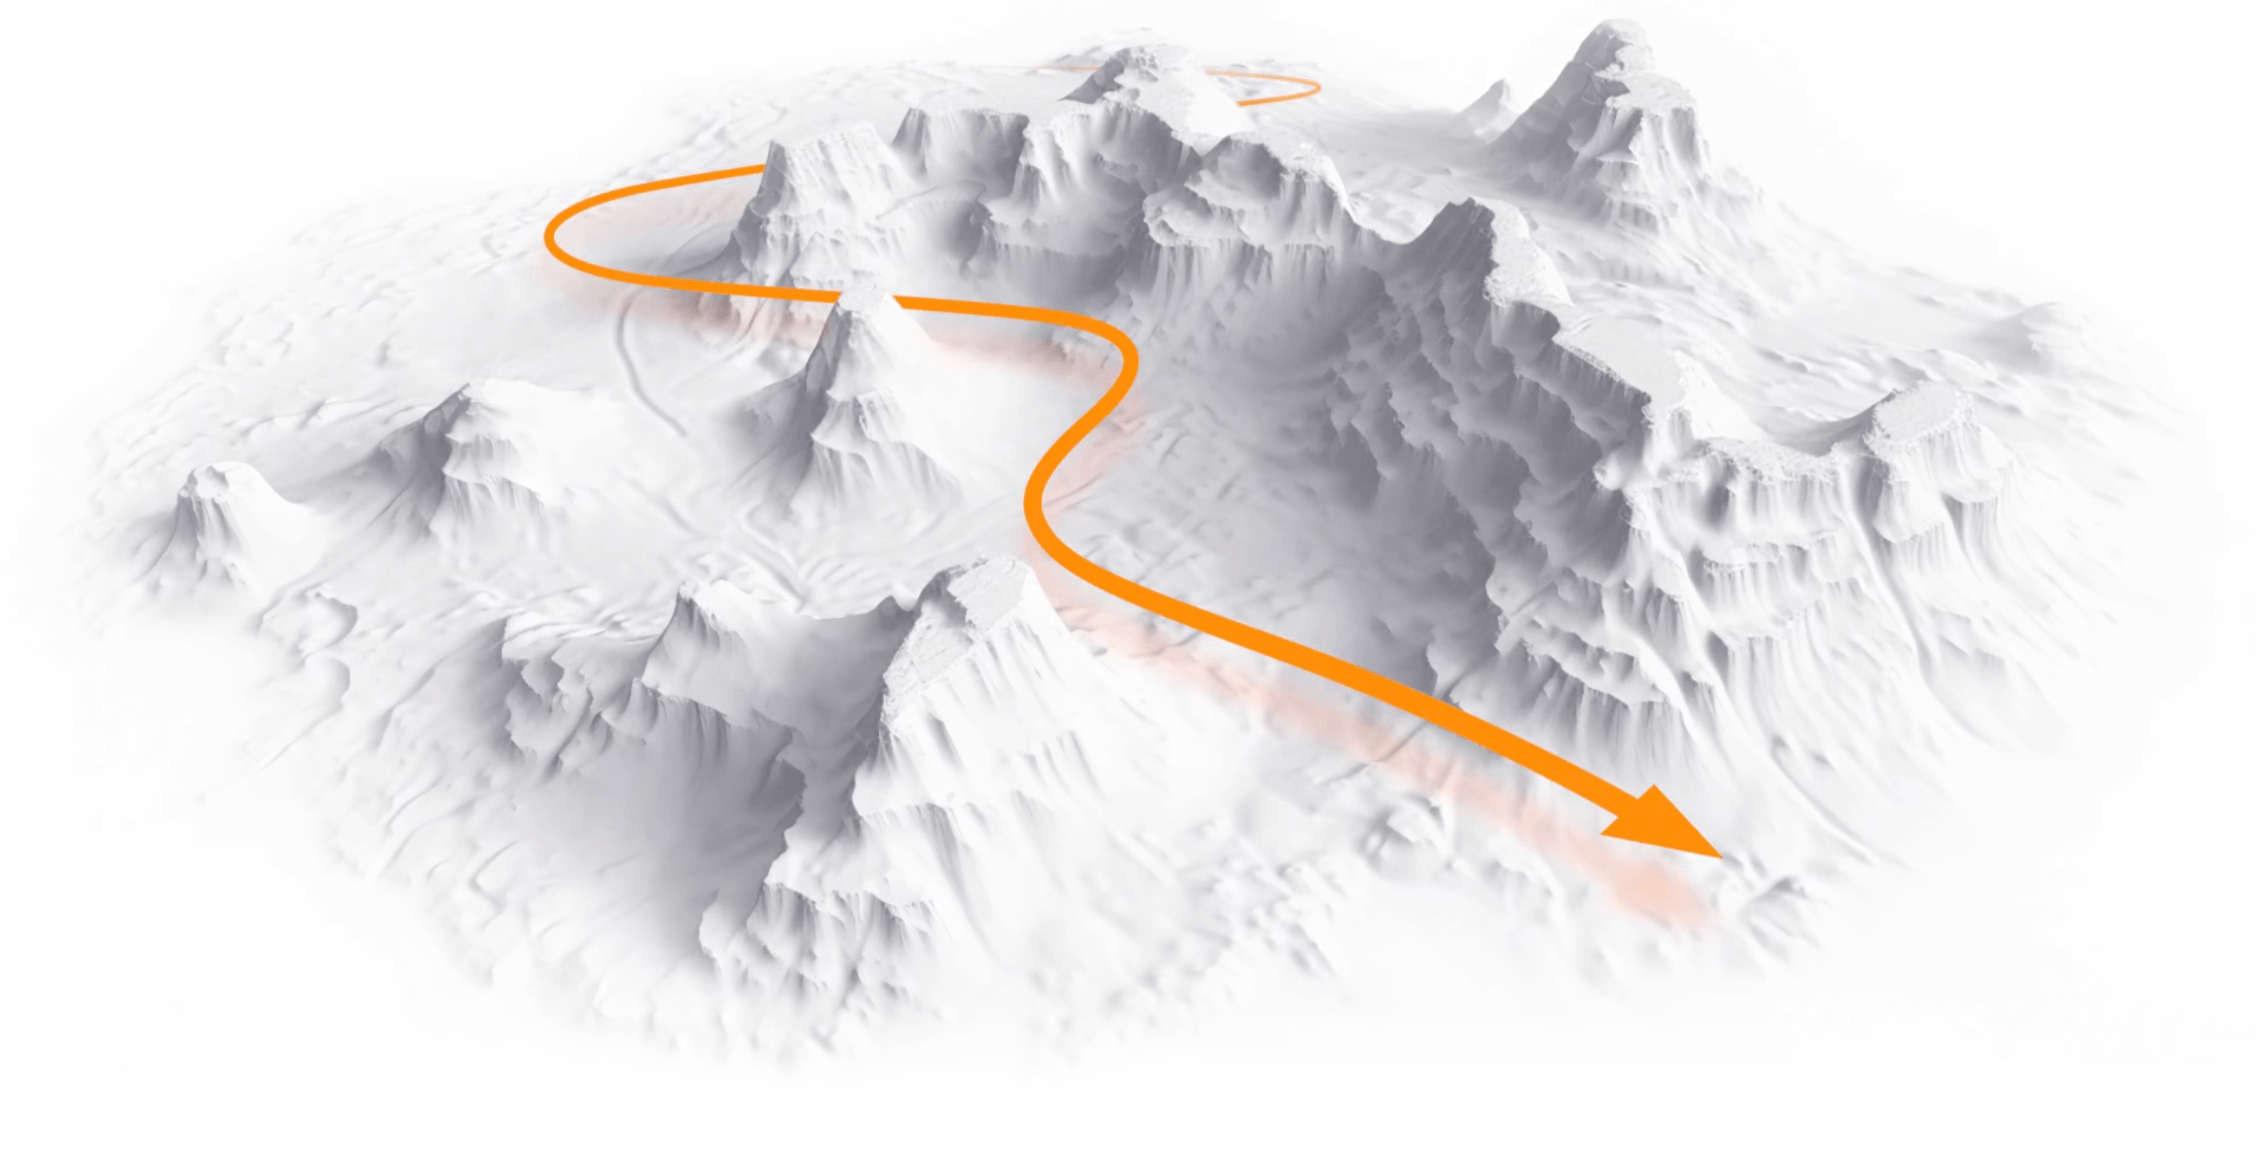 Ilustração topográfica de uma rota demonstrada por uma seta laranja navegando entre montanhas